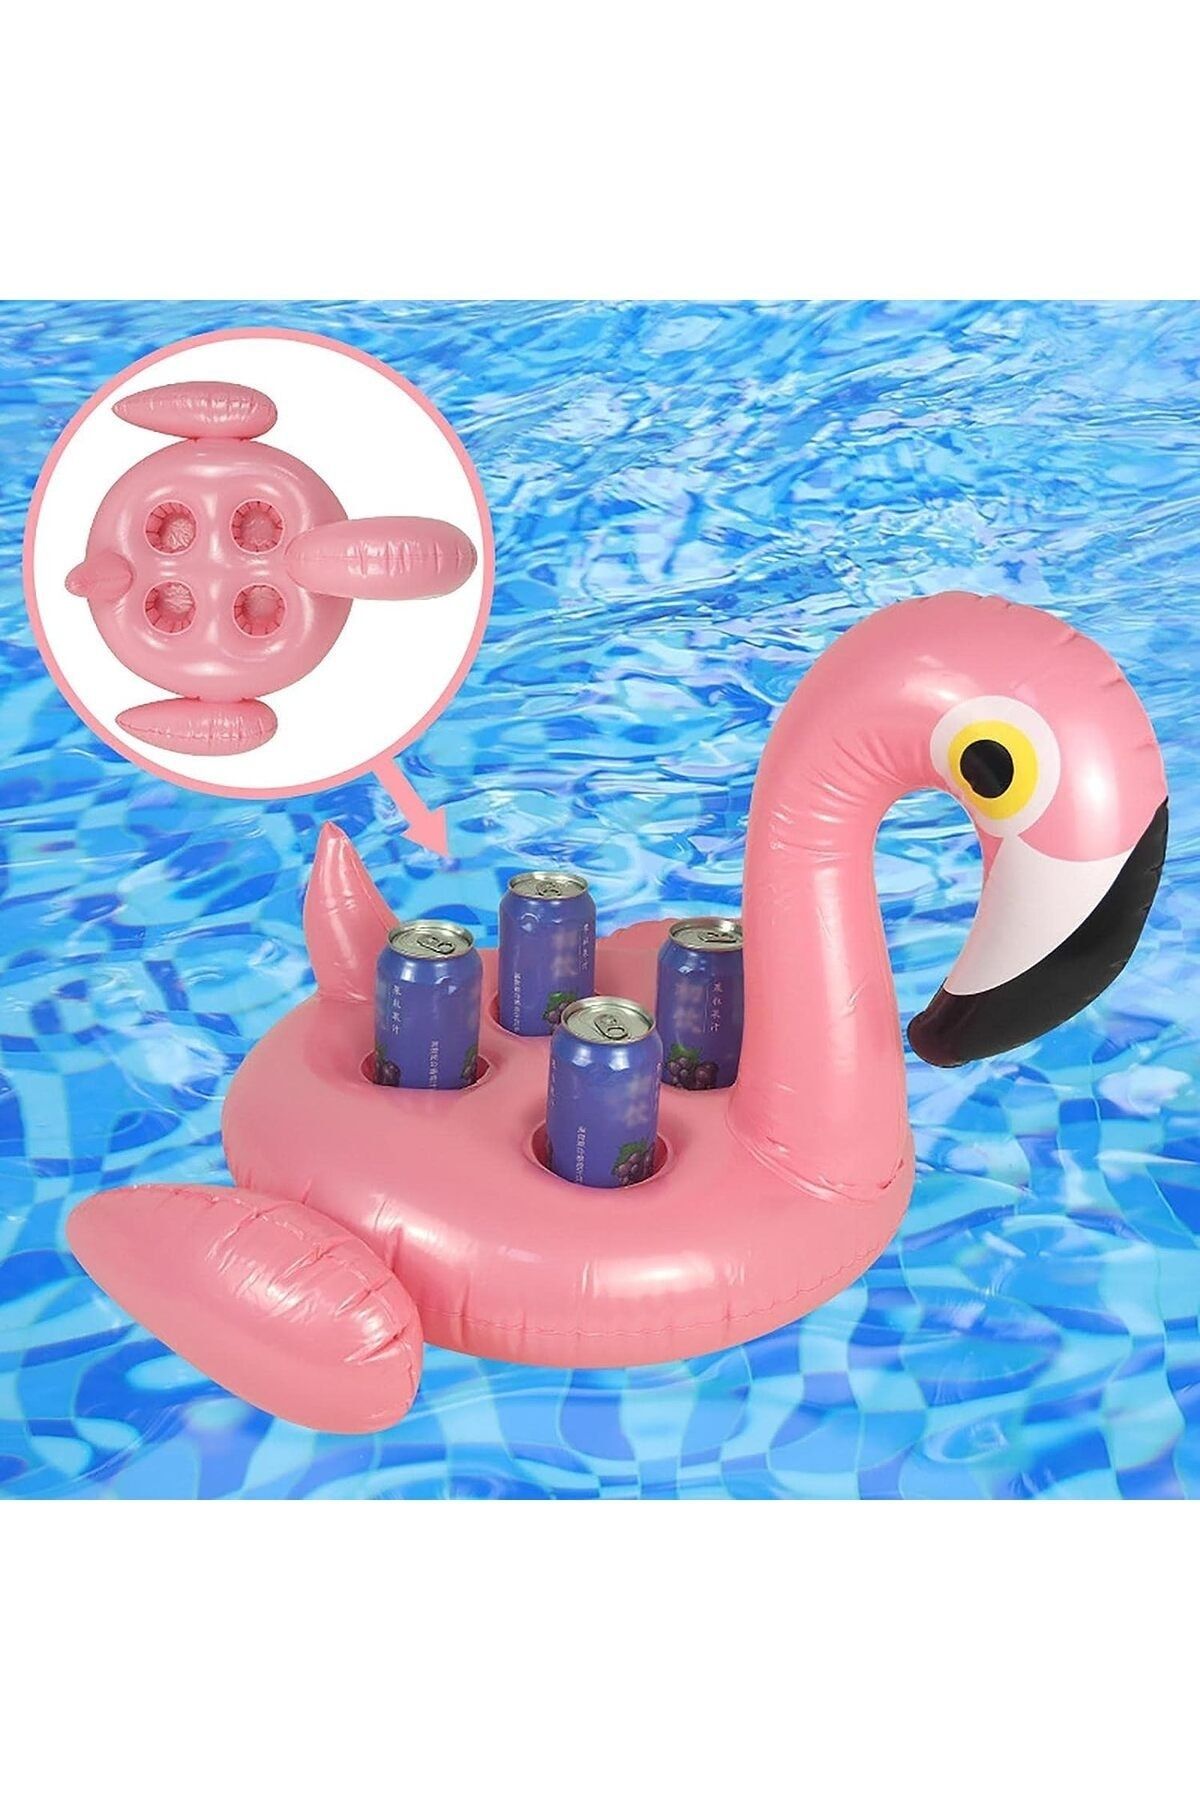 TUENGİ STORE Dev Boy Flamingo Figürlü 4'lü Şişme Bardak Tutucu Havuz Partisi Şişme Bardaklık 55 Cm